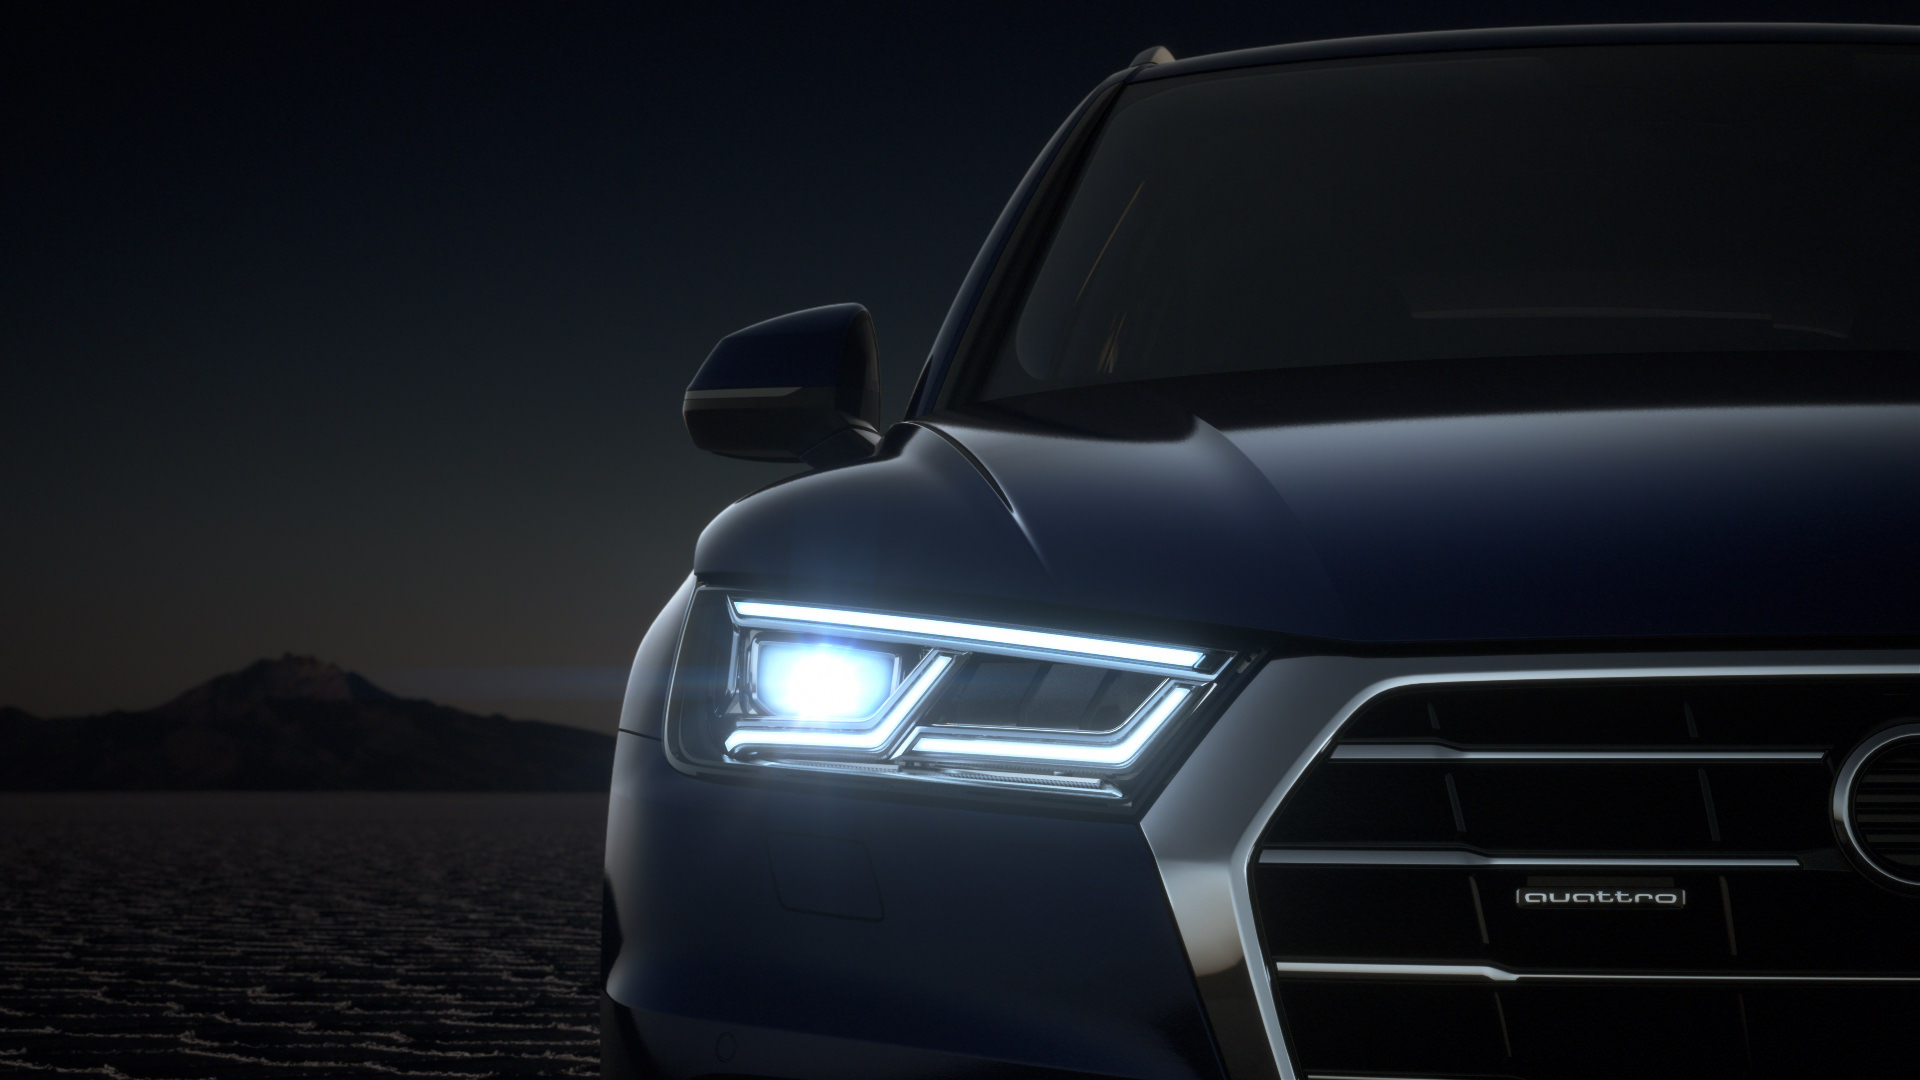 Al van veraf maakt hij indruk met de optionele Audi Matrix LED-koplampen. De LED-dagrijverlichting en dynamische richtingaanwijzers vallen goed op